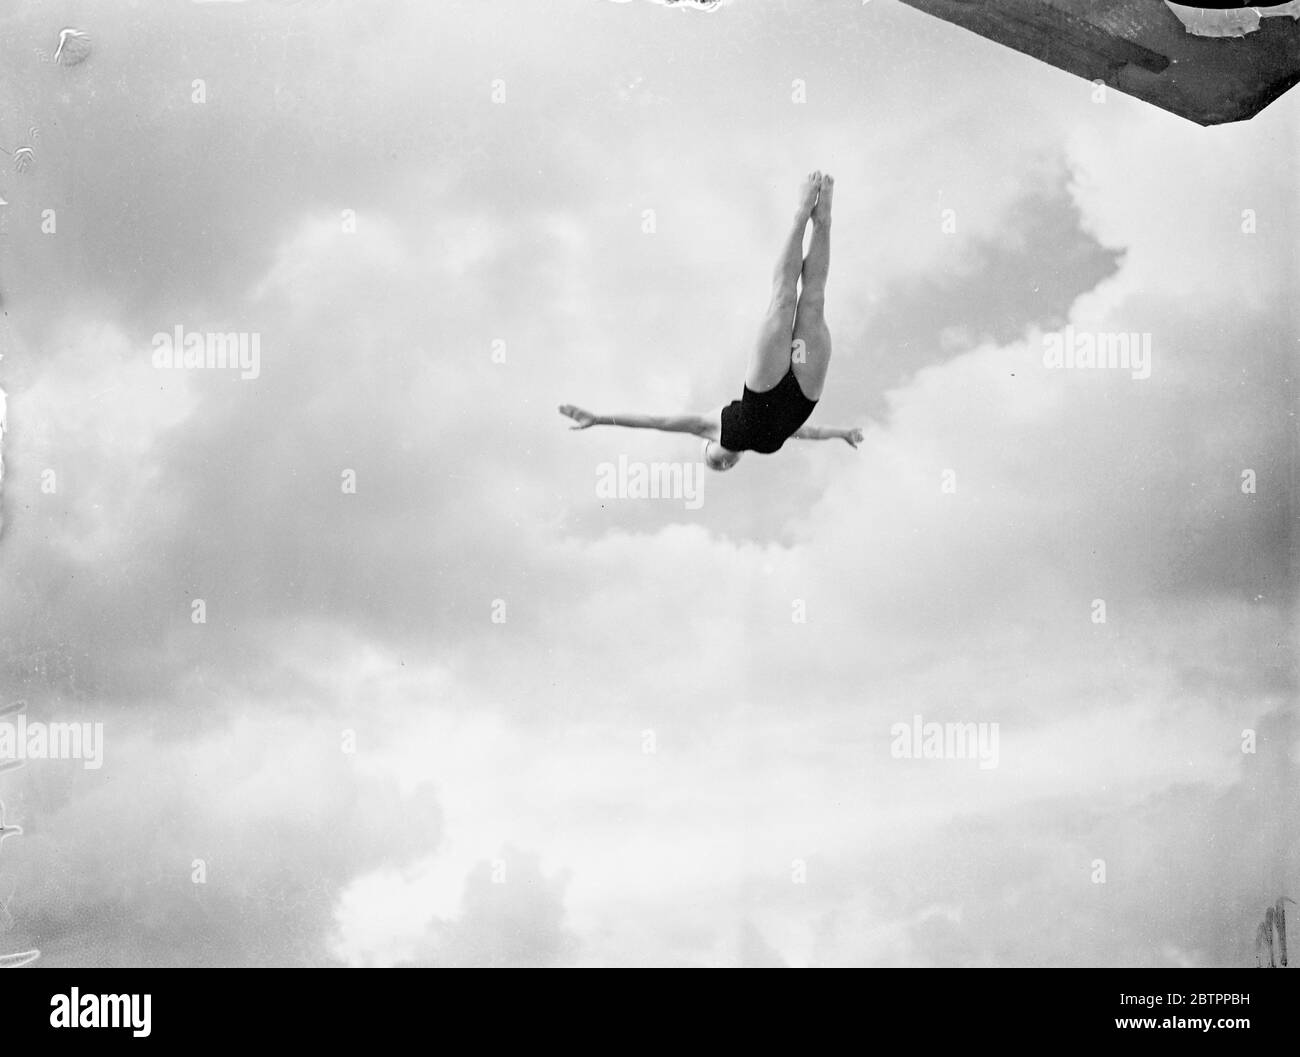 Fluttuante nelle nuvole. Betty Slade, titolare di un trampolino inglese, di 17 anni, ha fatto il suo debutto in un campionato di immersione in alto quando ha sfidato per i campionati delle contee del sud al Purley Way Pool di fronte all'aeroporto di Croydon. Spettacoli fotografici, Betty Slade in swallow dive, grazia birdlike, attraverso le nuvole a Croydon, Surrey. 30 giugno 1938 Foto Stock